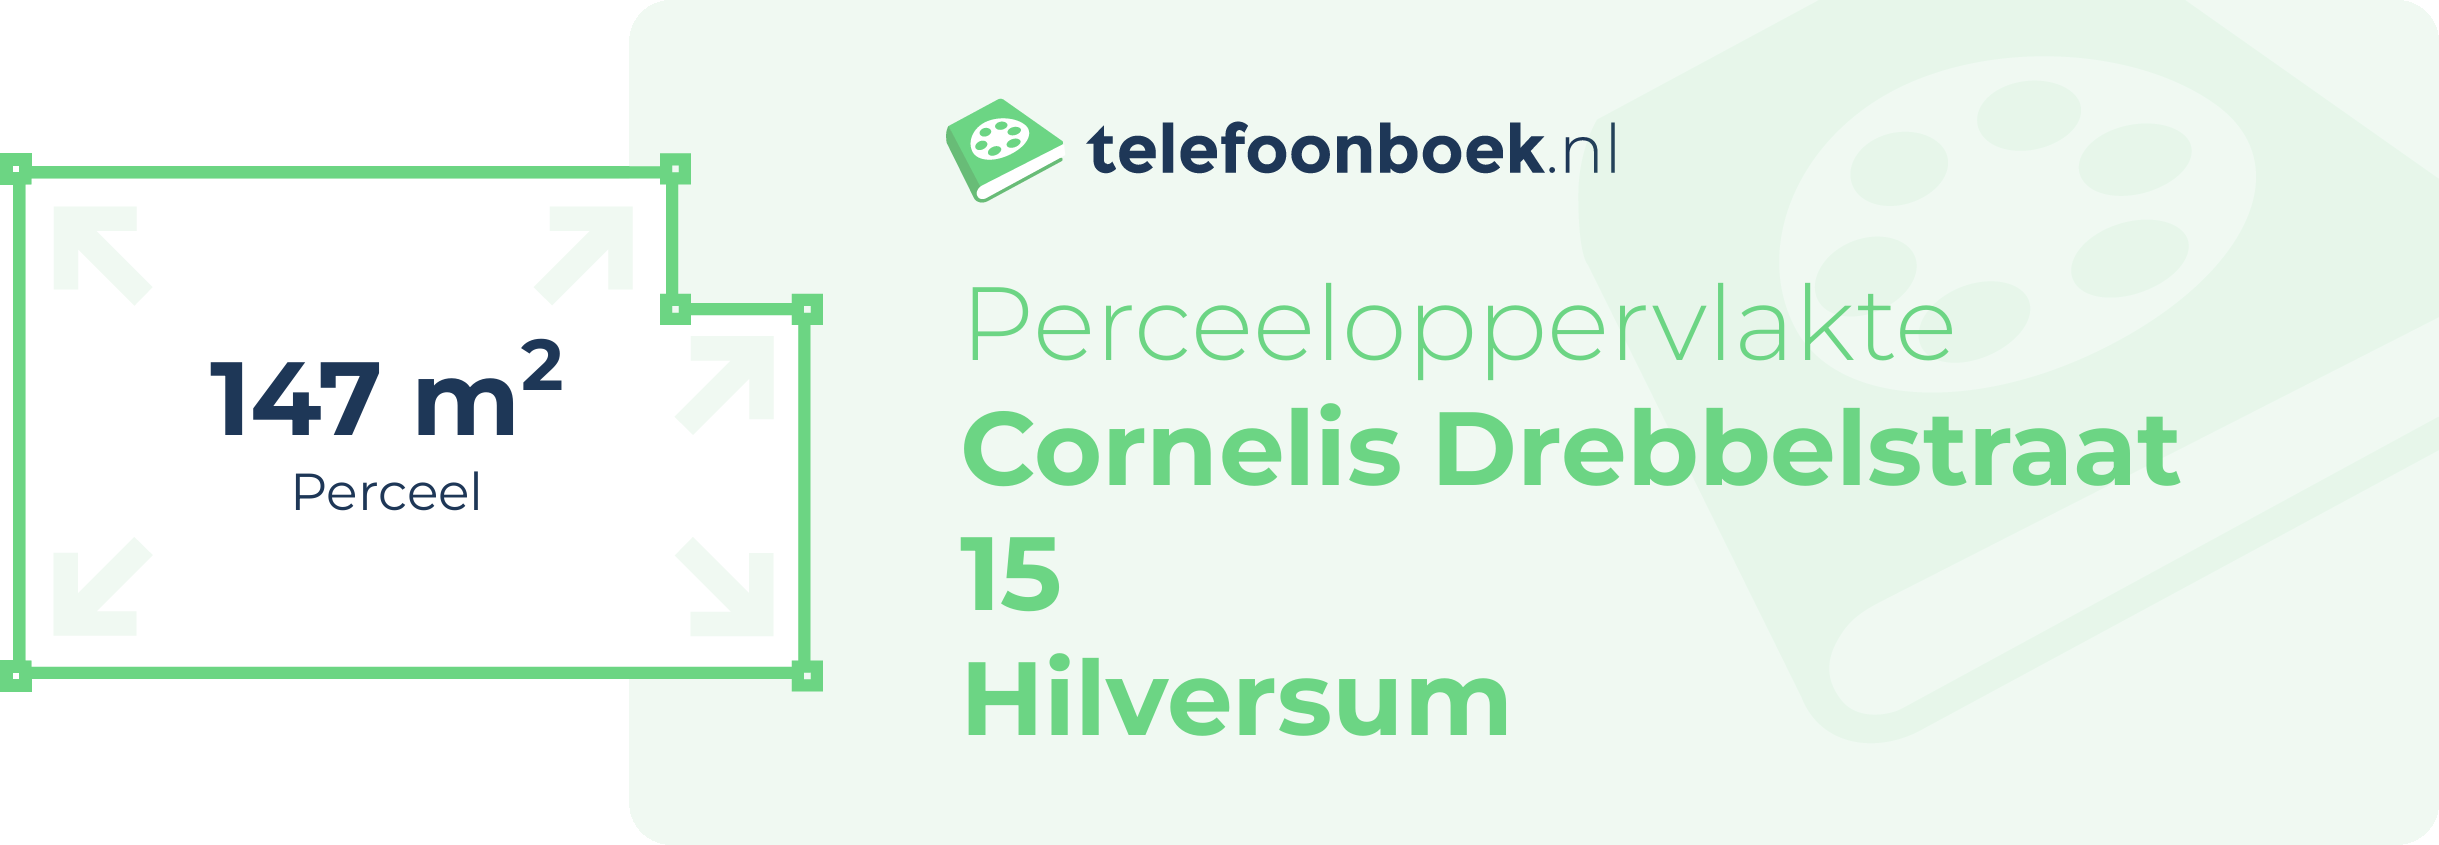 Perceeloppervlakte Cornelis Drebbelstraat 15 Hilversum